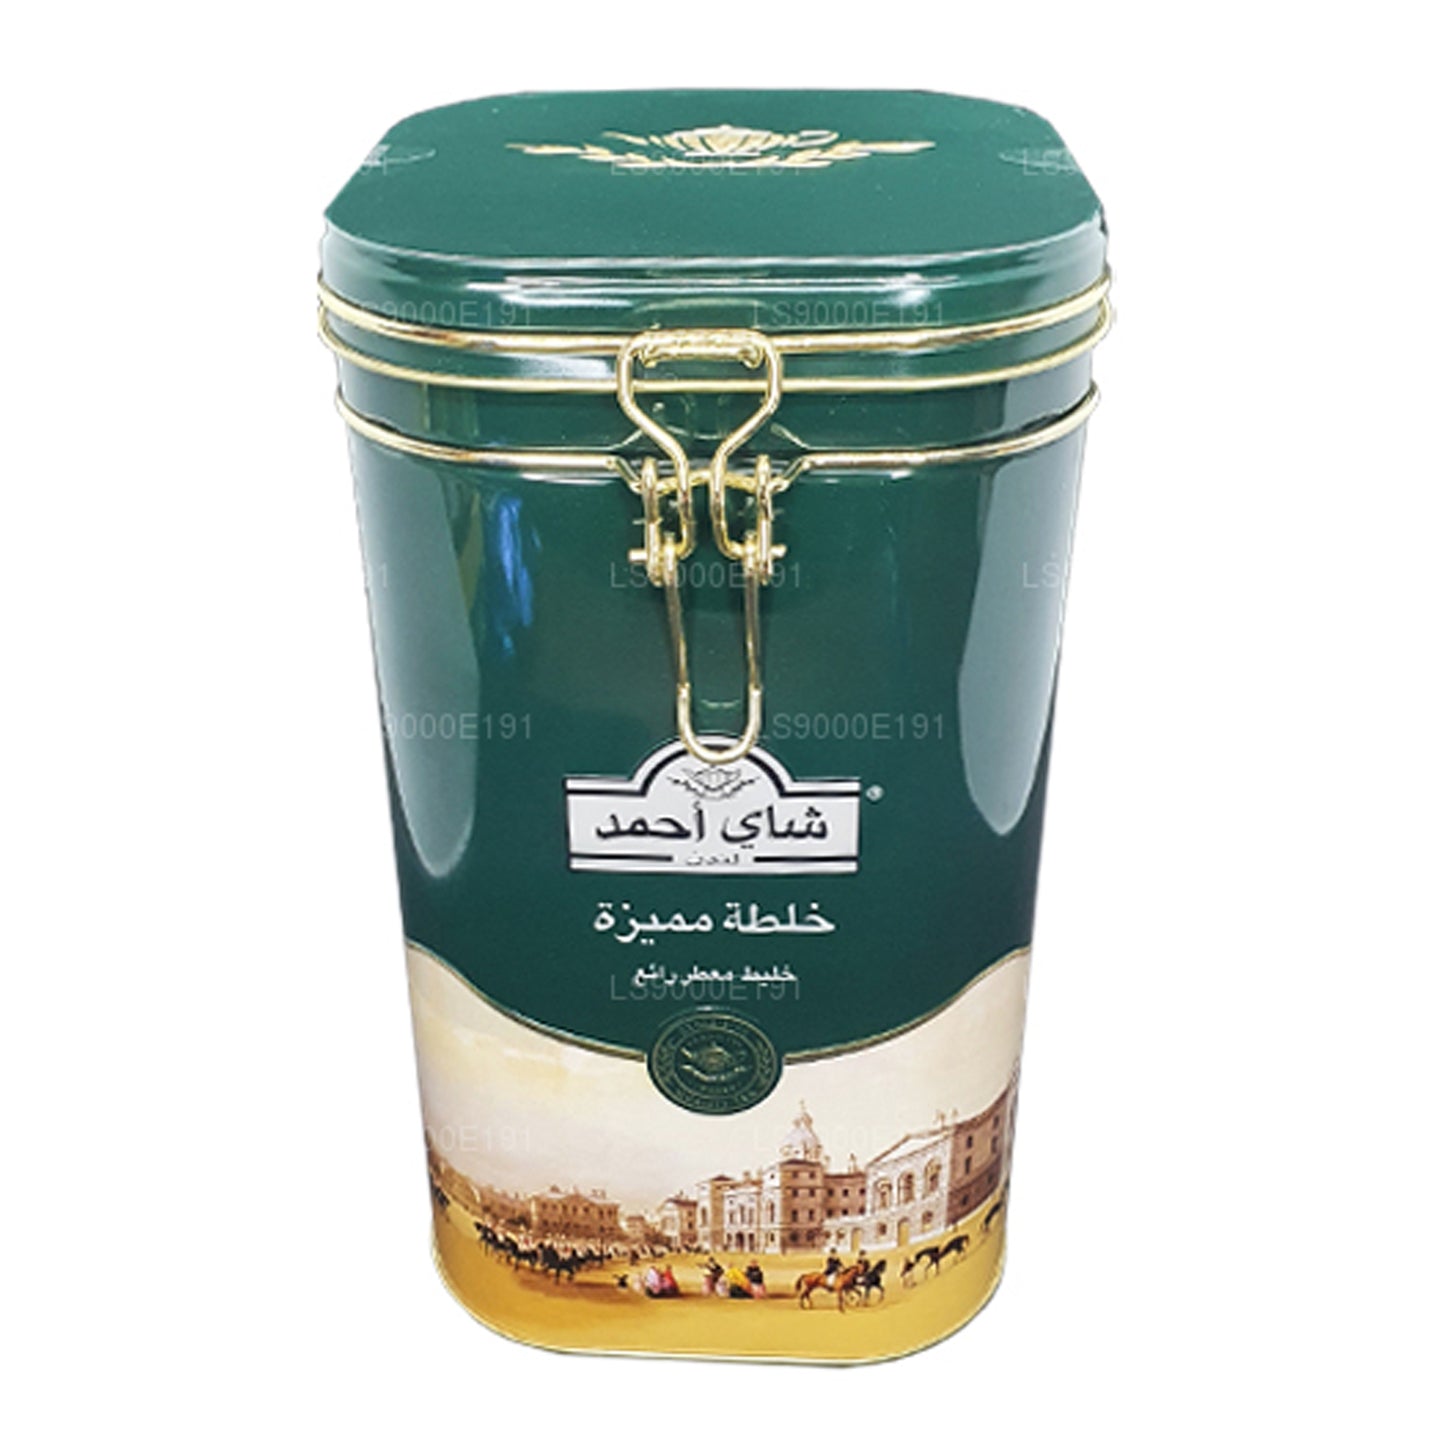 Ahmad Tea Special Blend Zawias Caddy (450g)